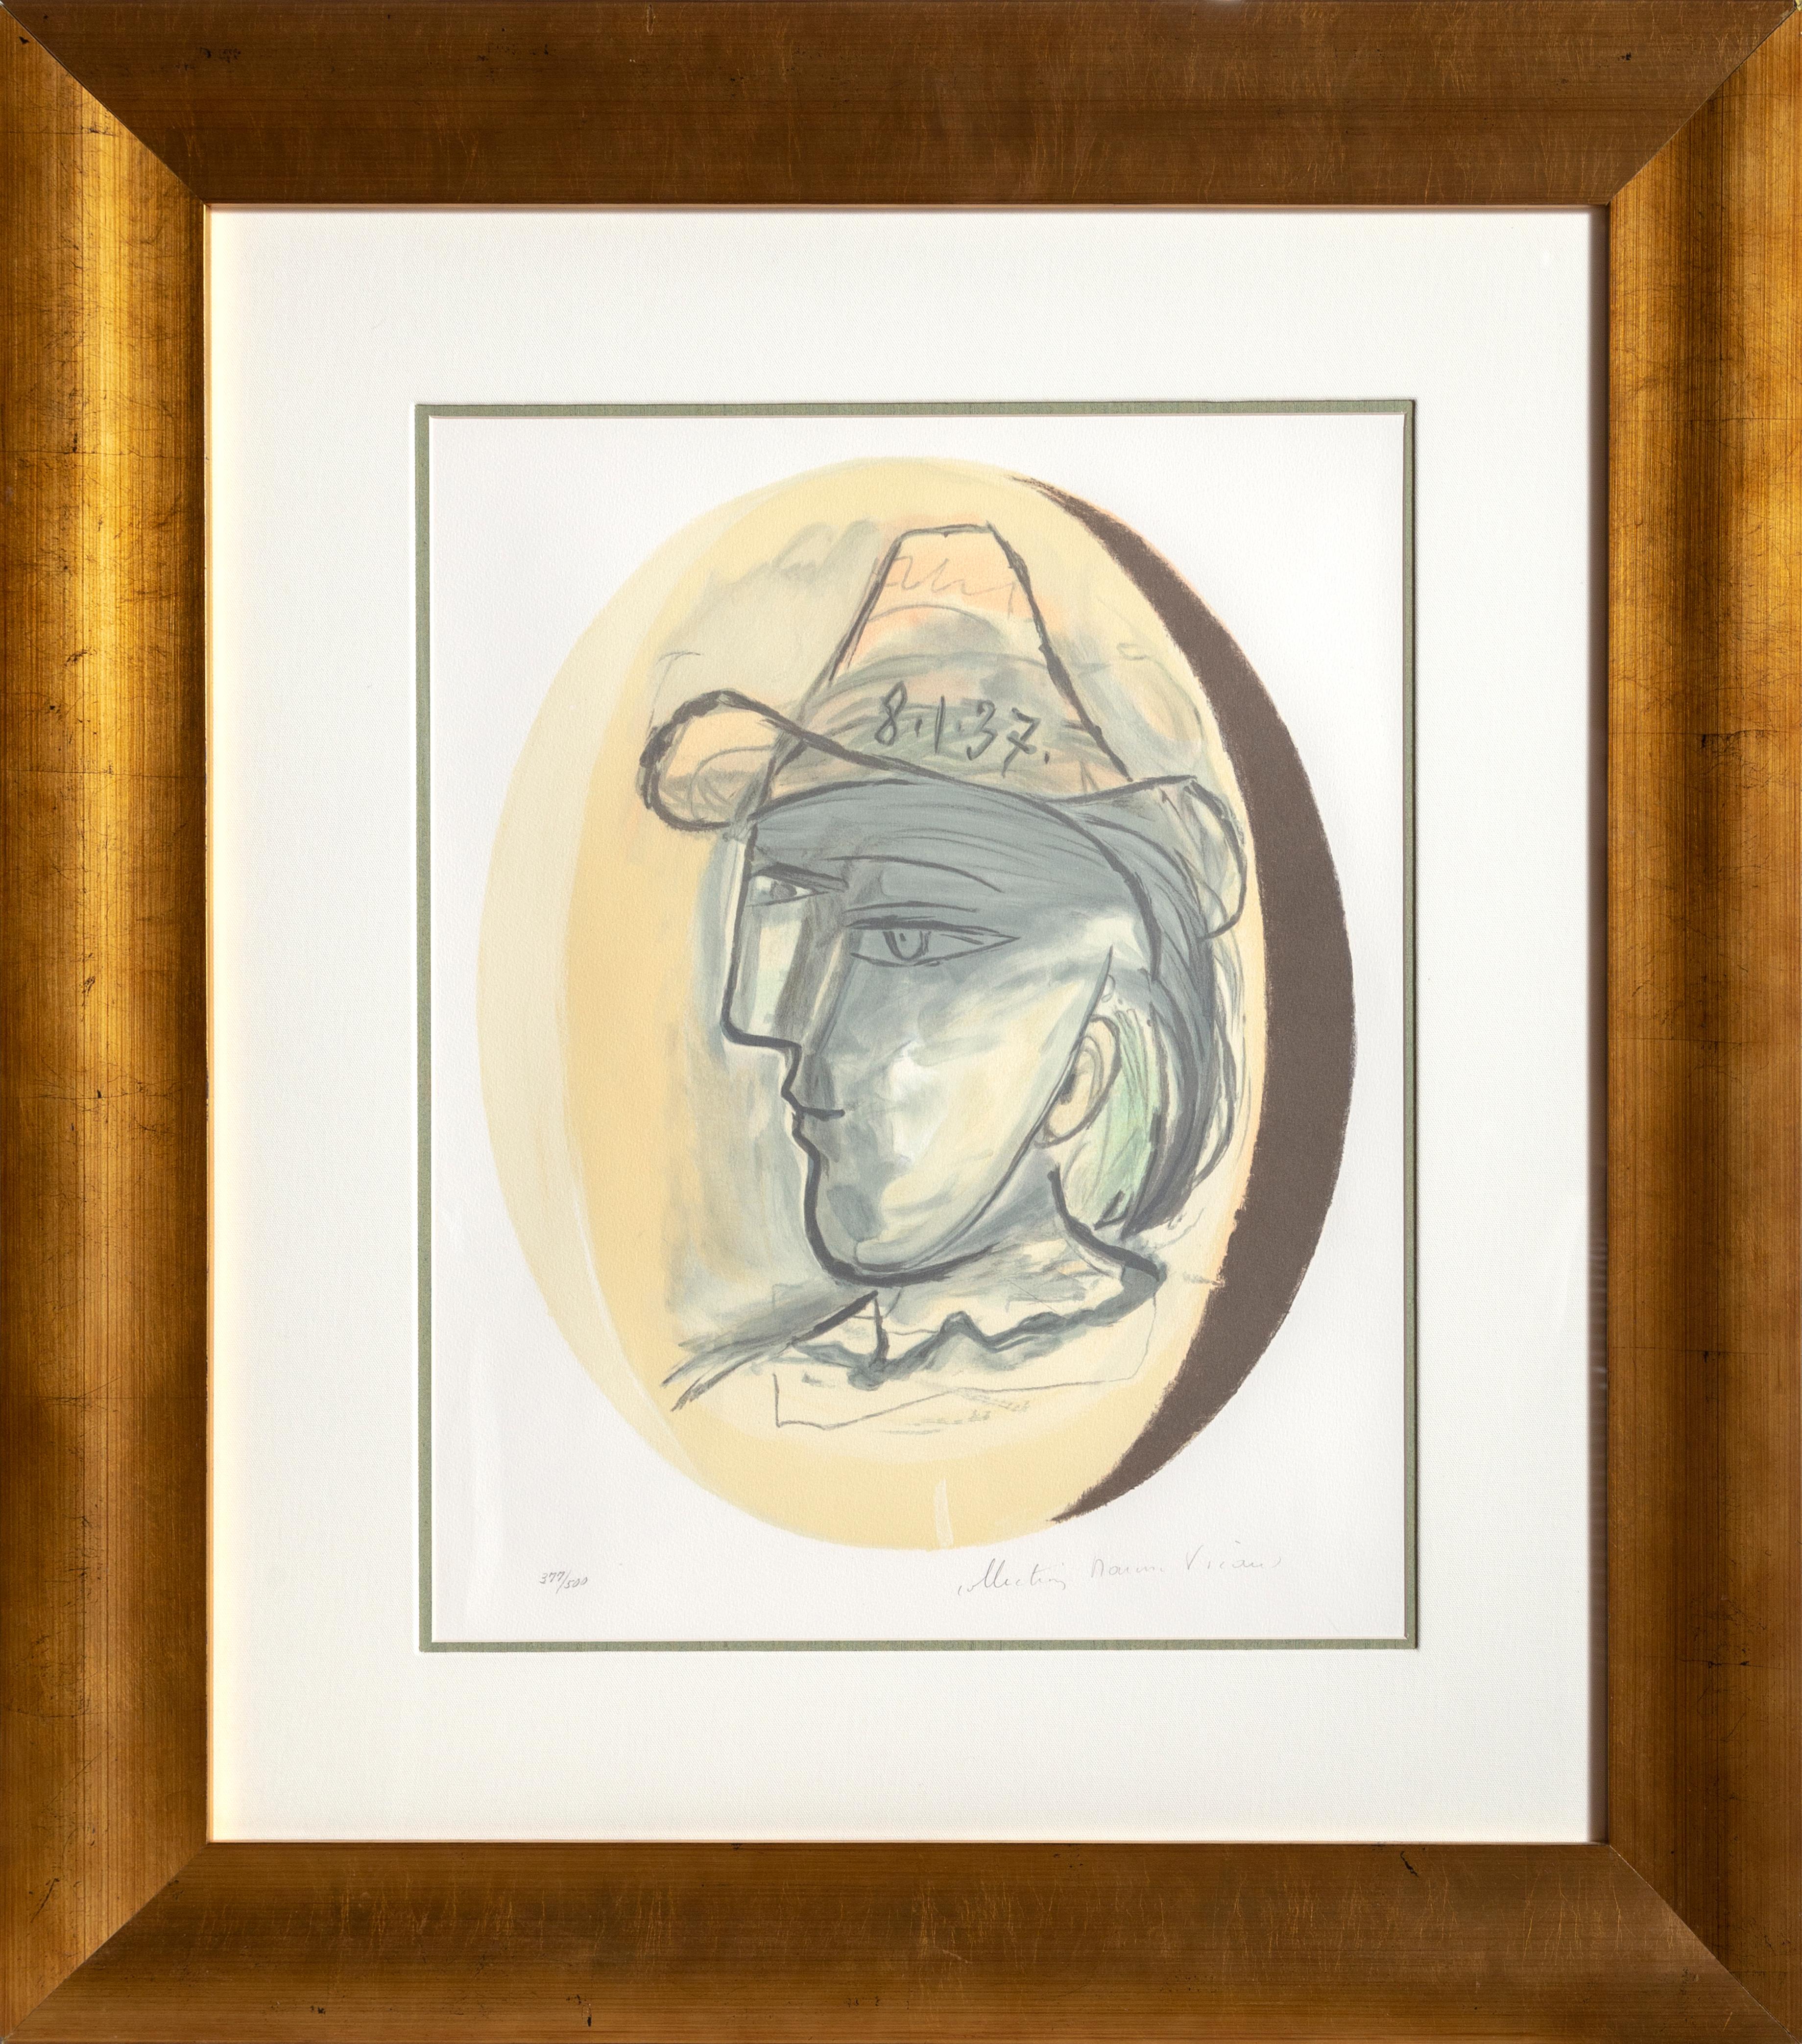 Eine Lithographie aus der Marina Picasso Estate Collection nach dem Gemälde "Tete" von Pablo Picasso.  Das Originalgemälde wurde 1937 fertiggestellt. In den 1970er Jahren, nach Picassos Tod, autorisierte Marina Picasso, seine Enkelin, die